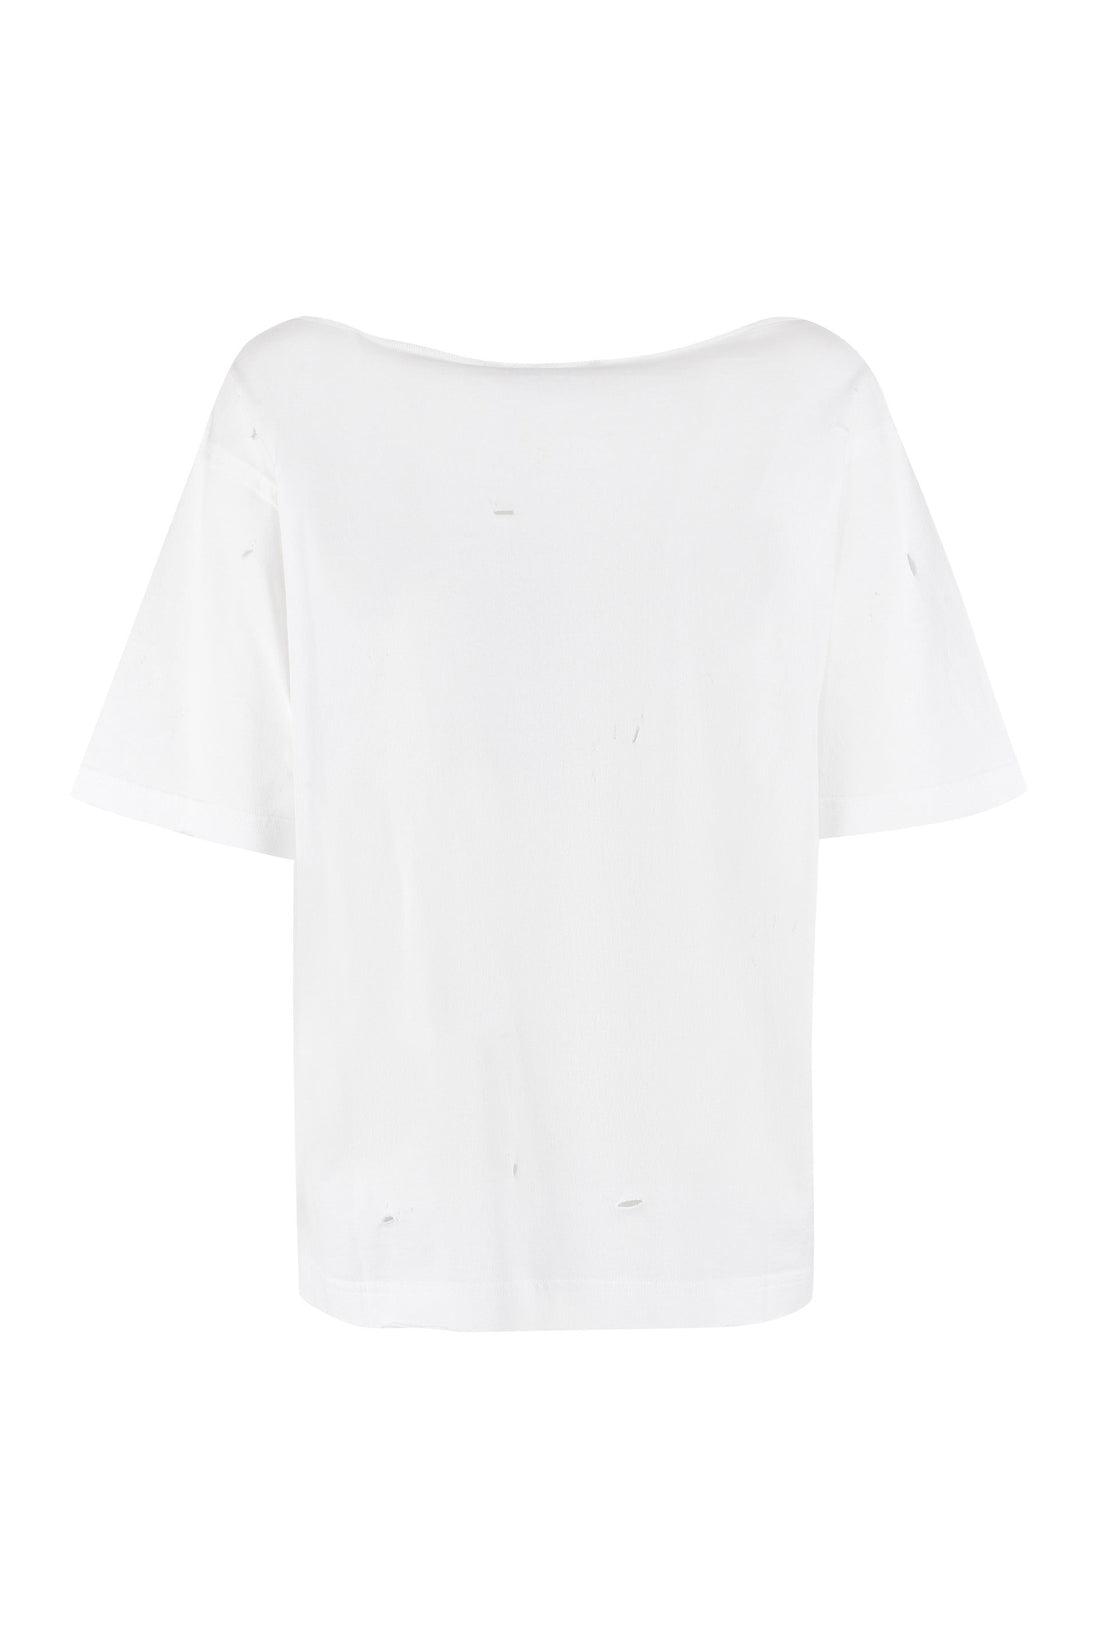 Dolce & Gabbana-OUTLET-SALE-Logo cotton t-shirt-ARCHIVIST